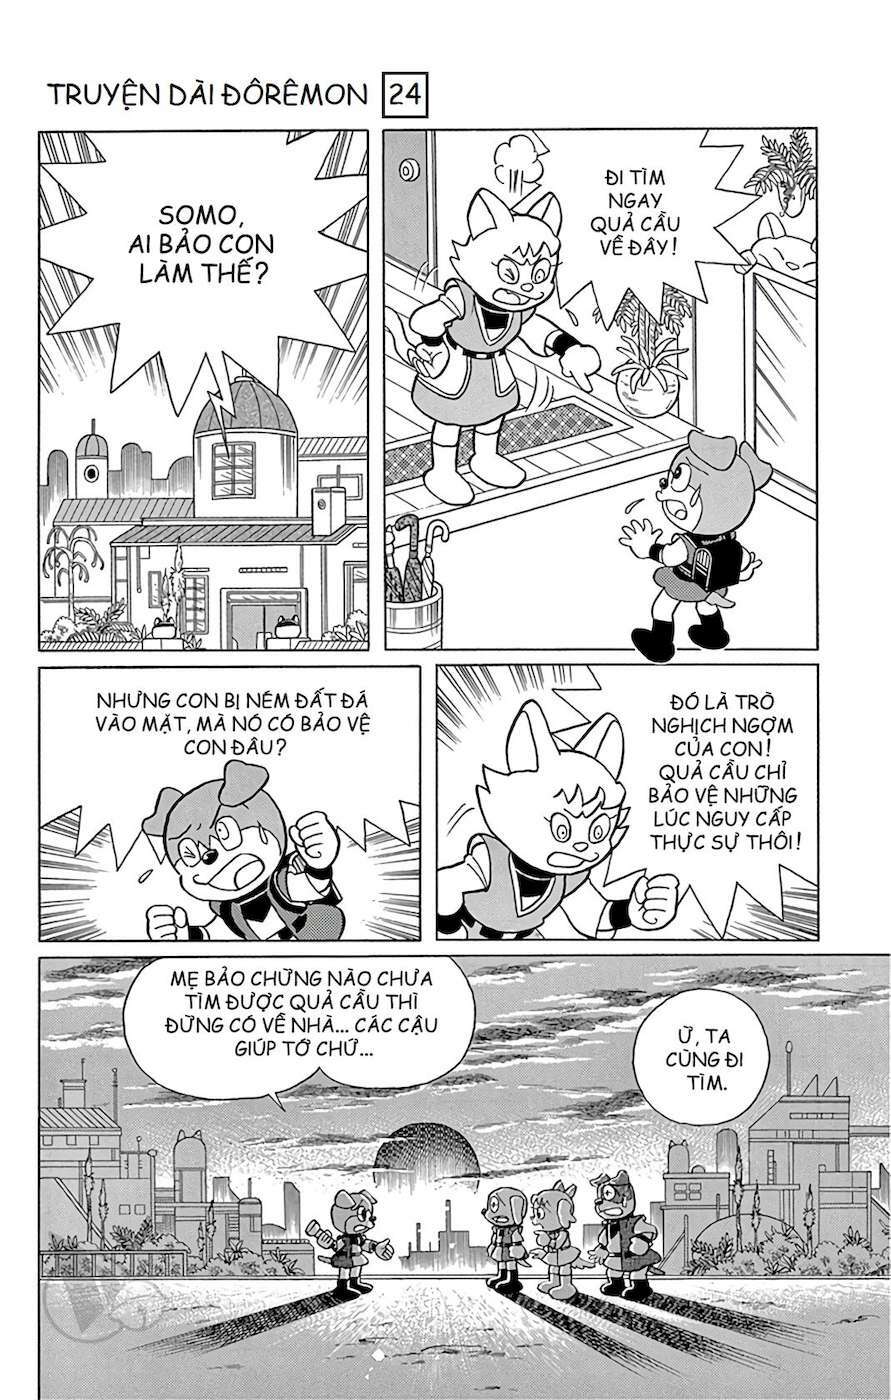 Truyện Tranh Doraemon: Nôbita Ở Vương Quốc Chó Mèo trang 178